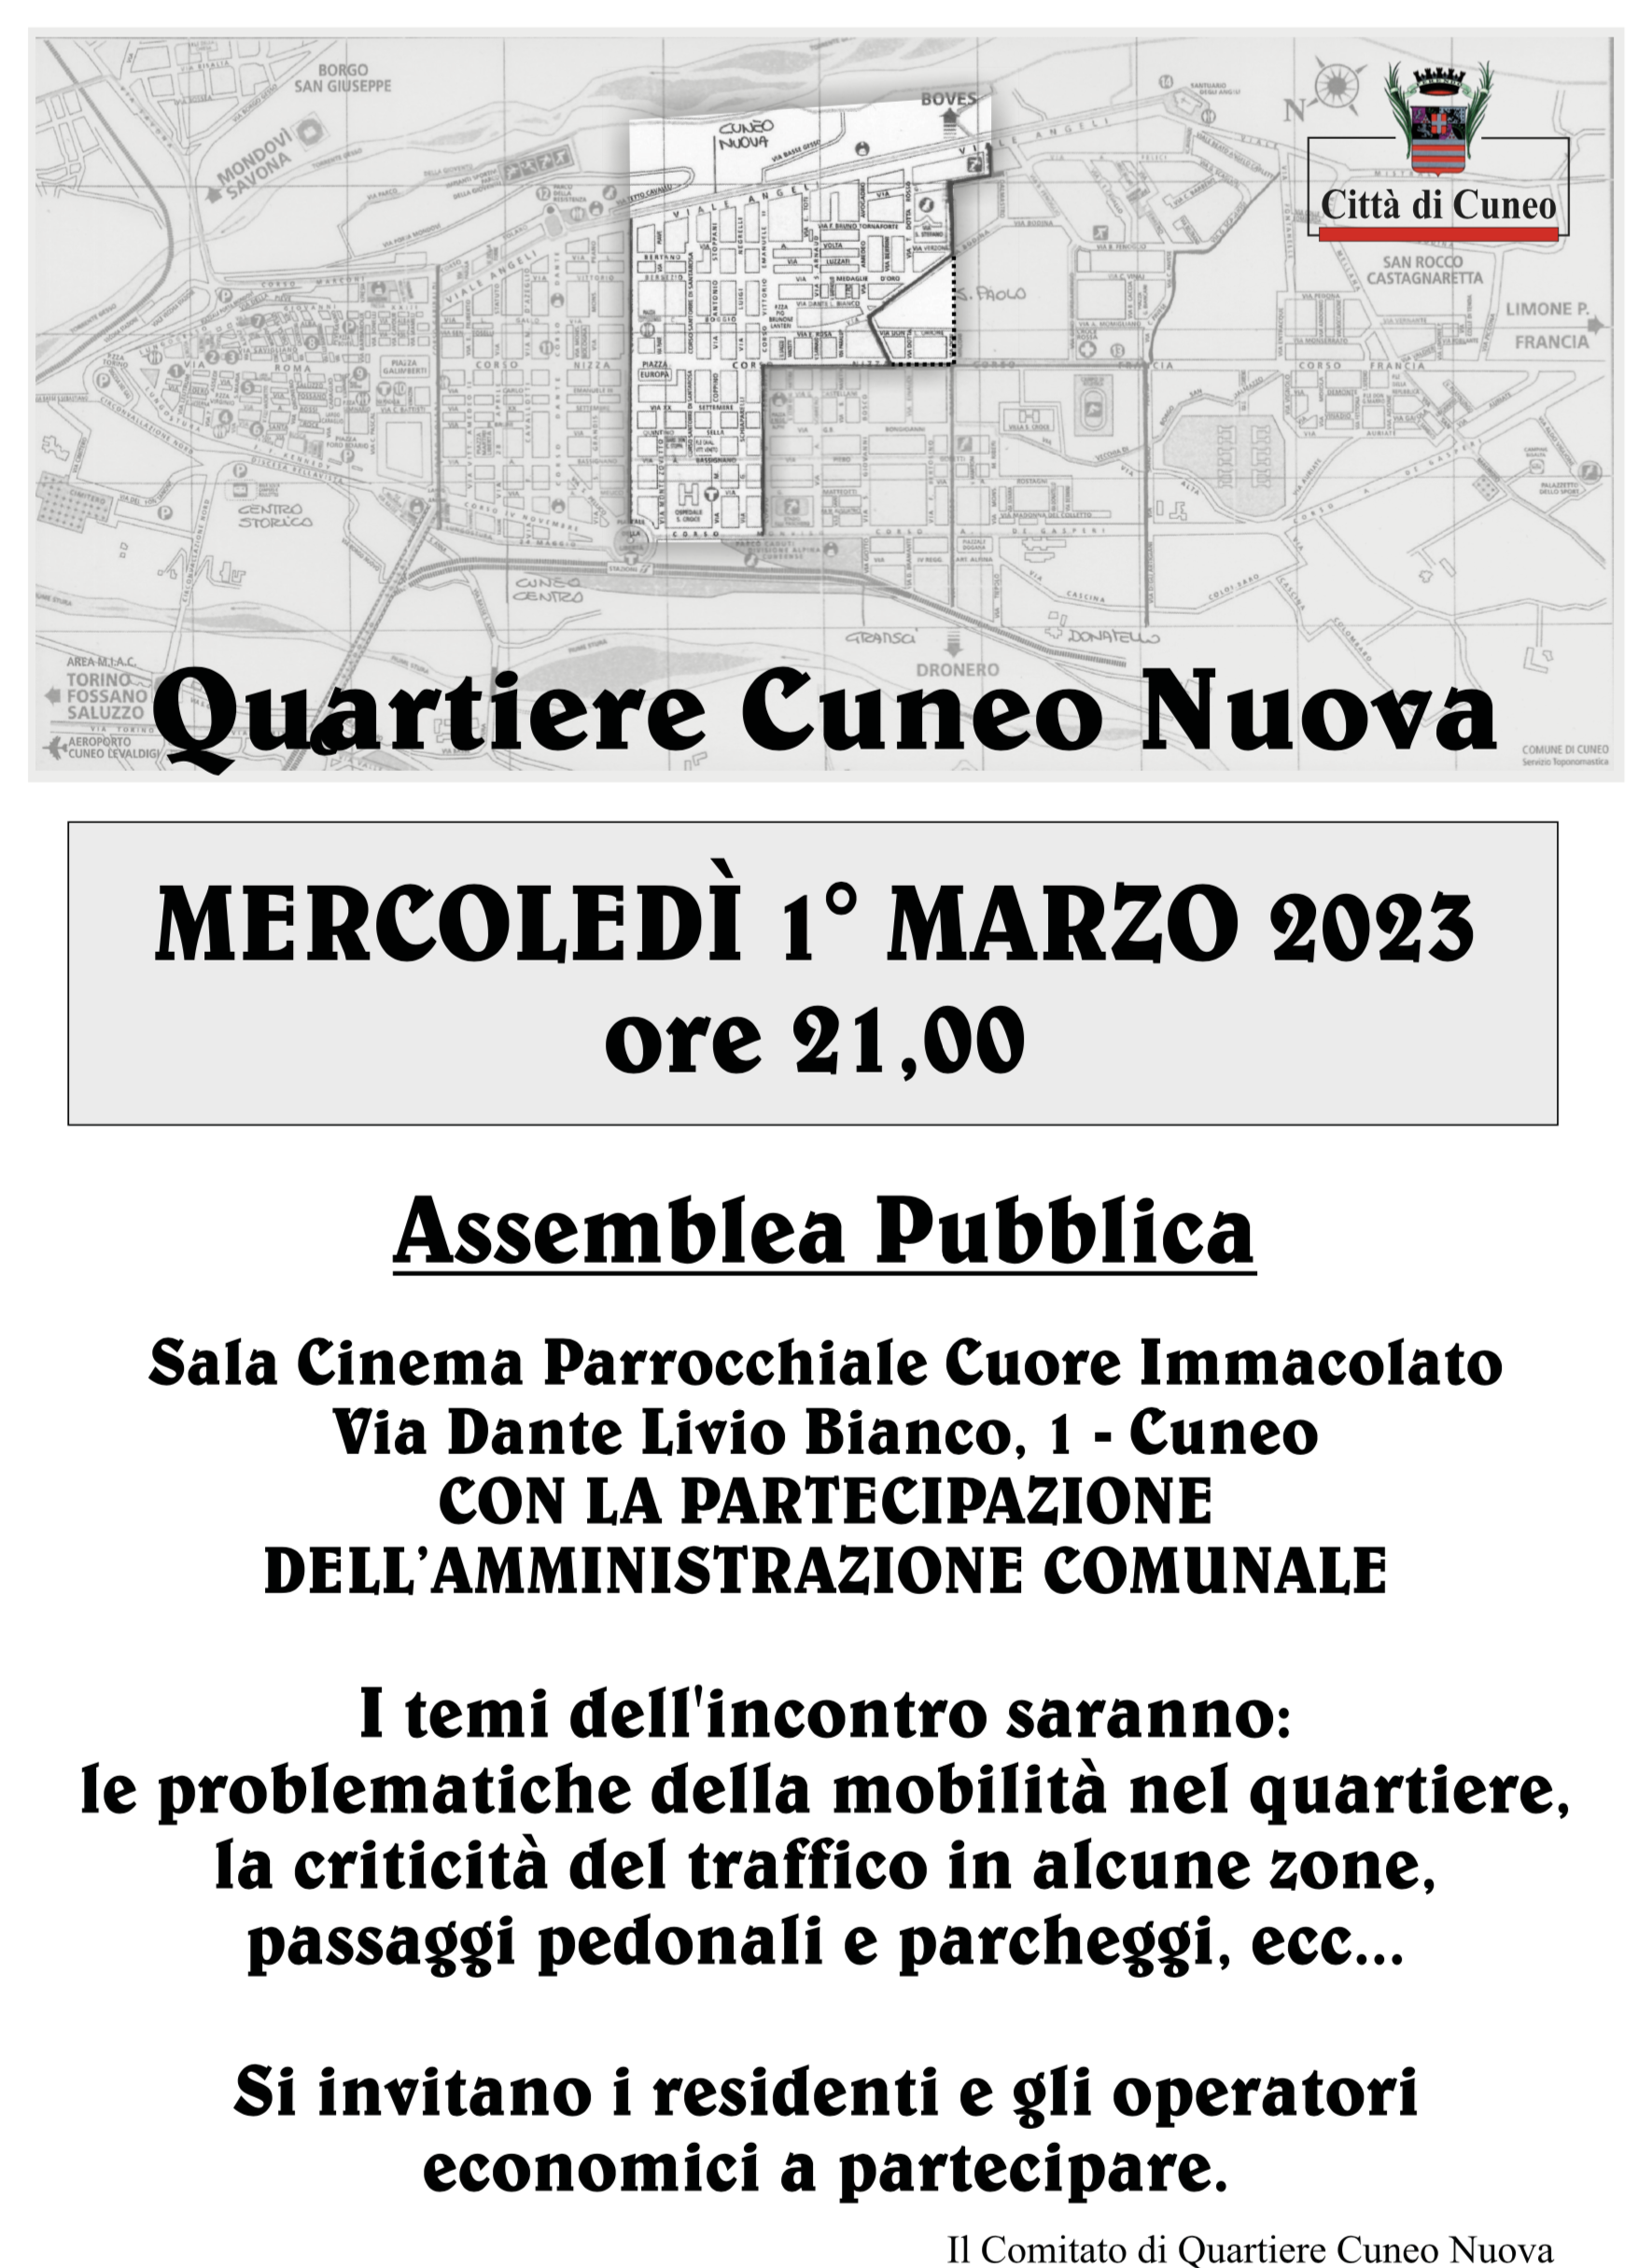 Assemblea di Quartiere Cuneo Nuova